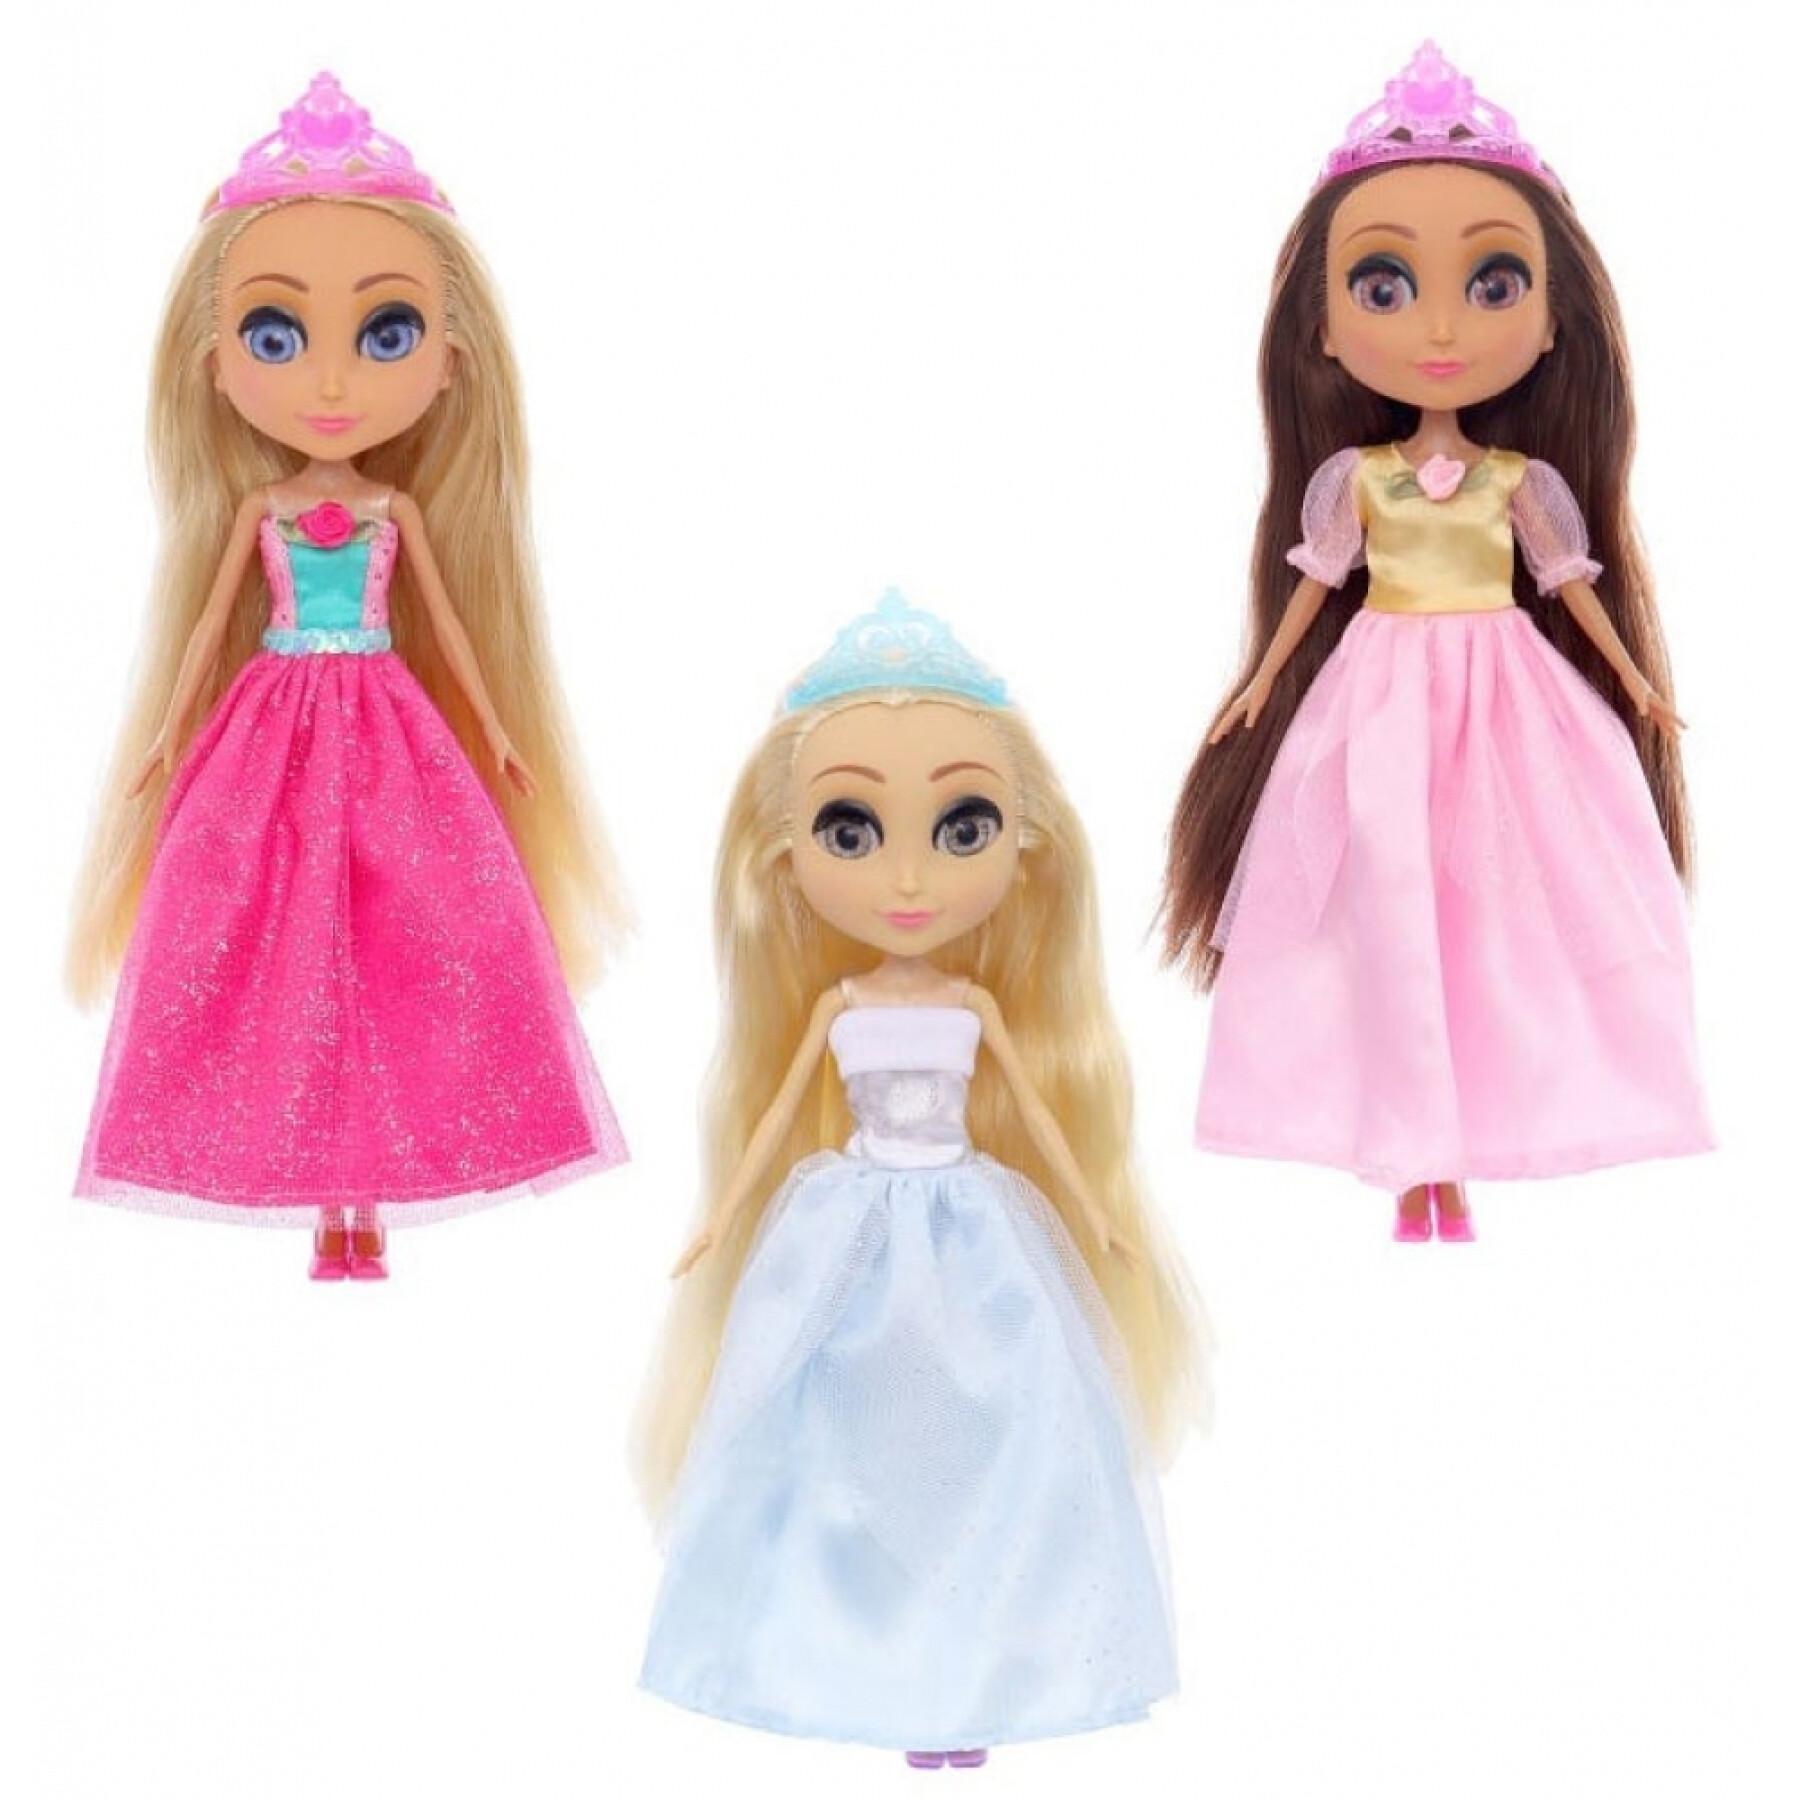 Bambola principessa delle fiabe 4 modelli assortiti Fantastiko